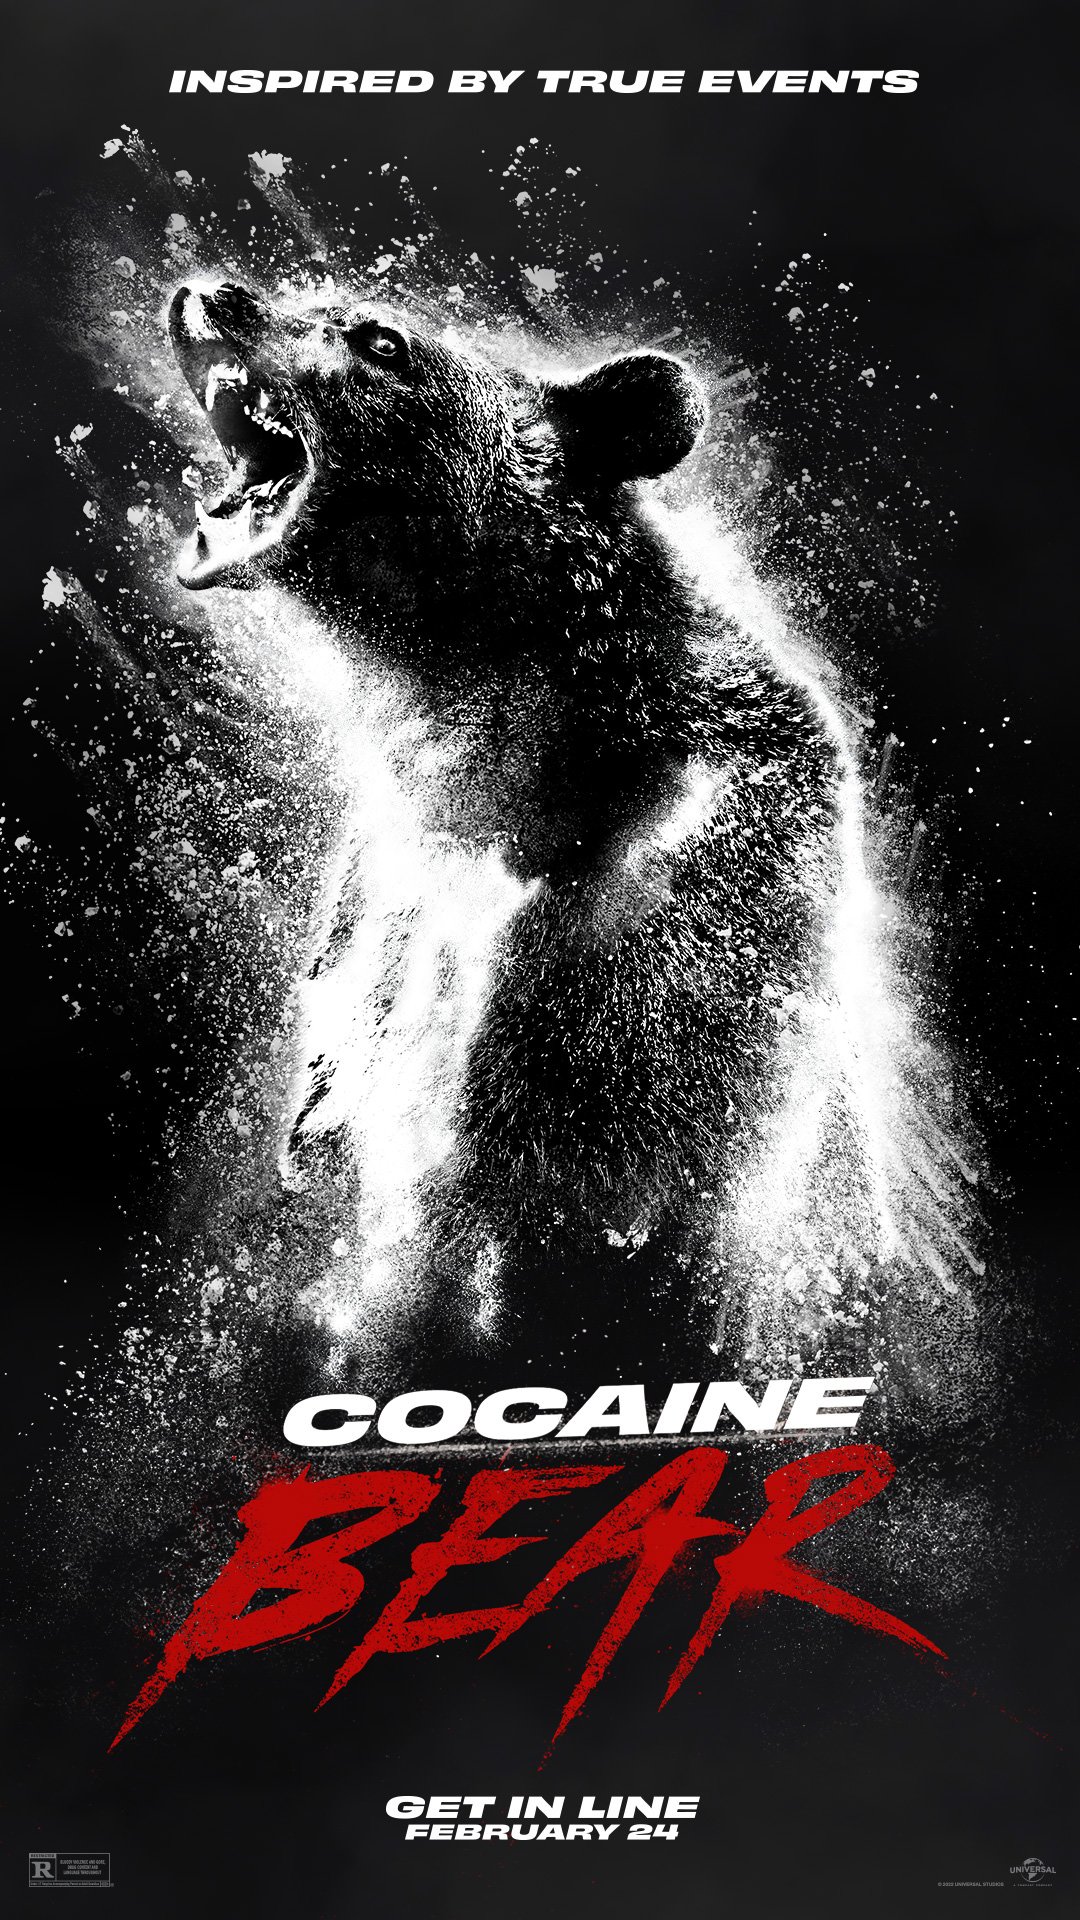 cocainebear-movie-poster.jpg